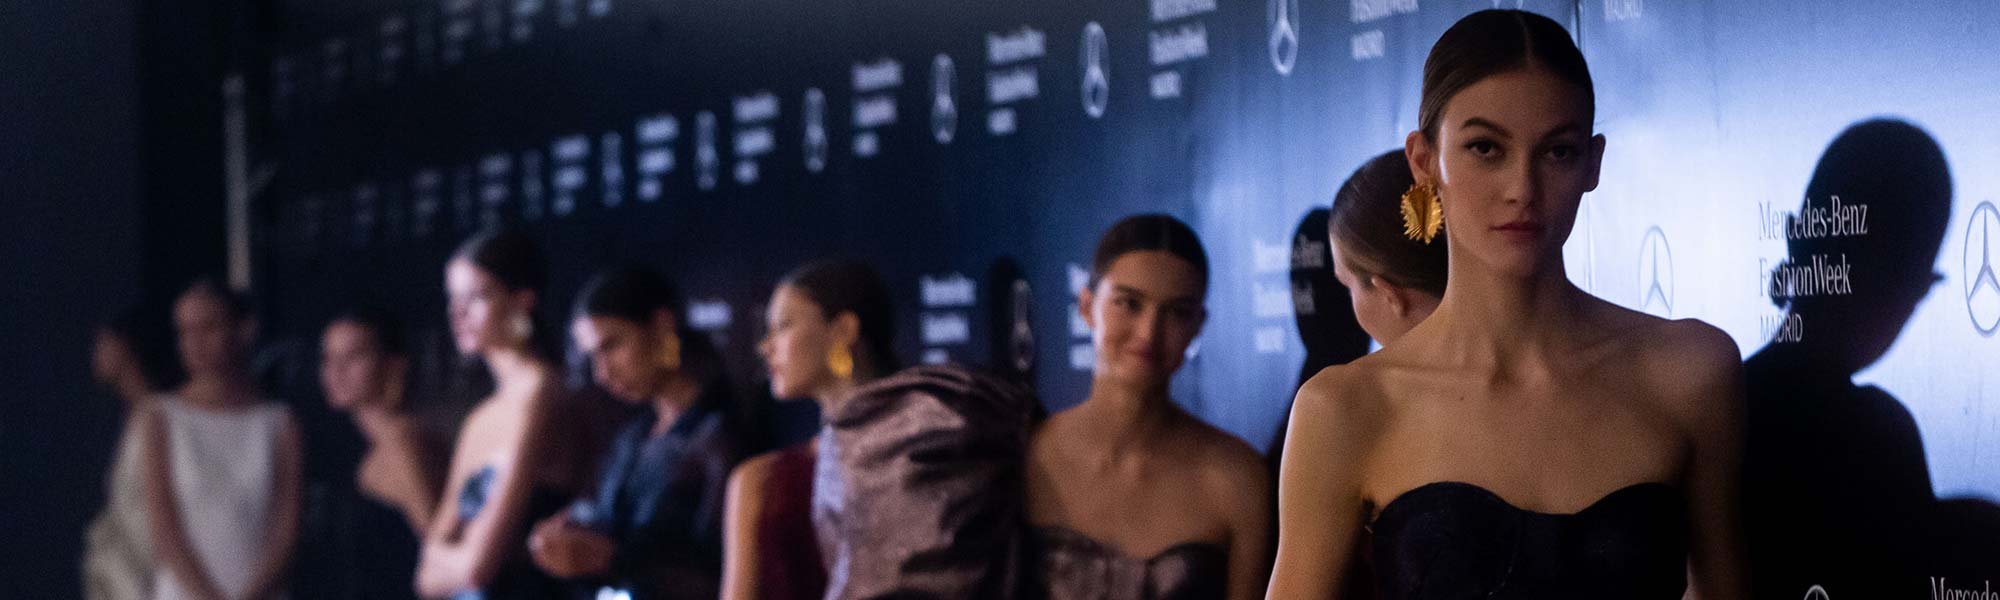 La 73ª edición de Mercedes-Benz Fashion Week Madrid ya está aquí y, cómo no, L’Oréal Paris repite como uno de los principales patrocinadores del evento.  